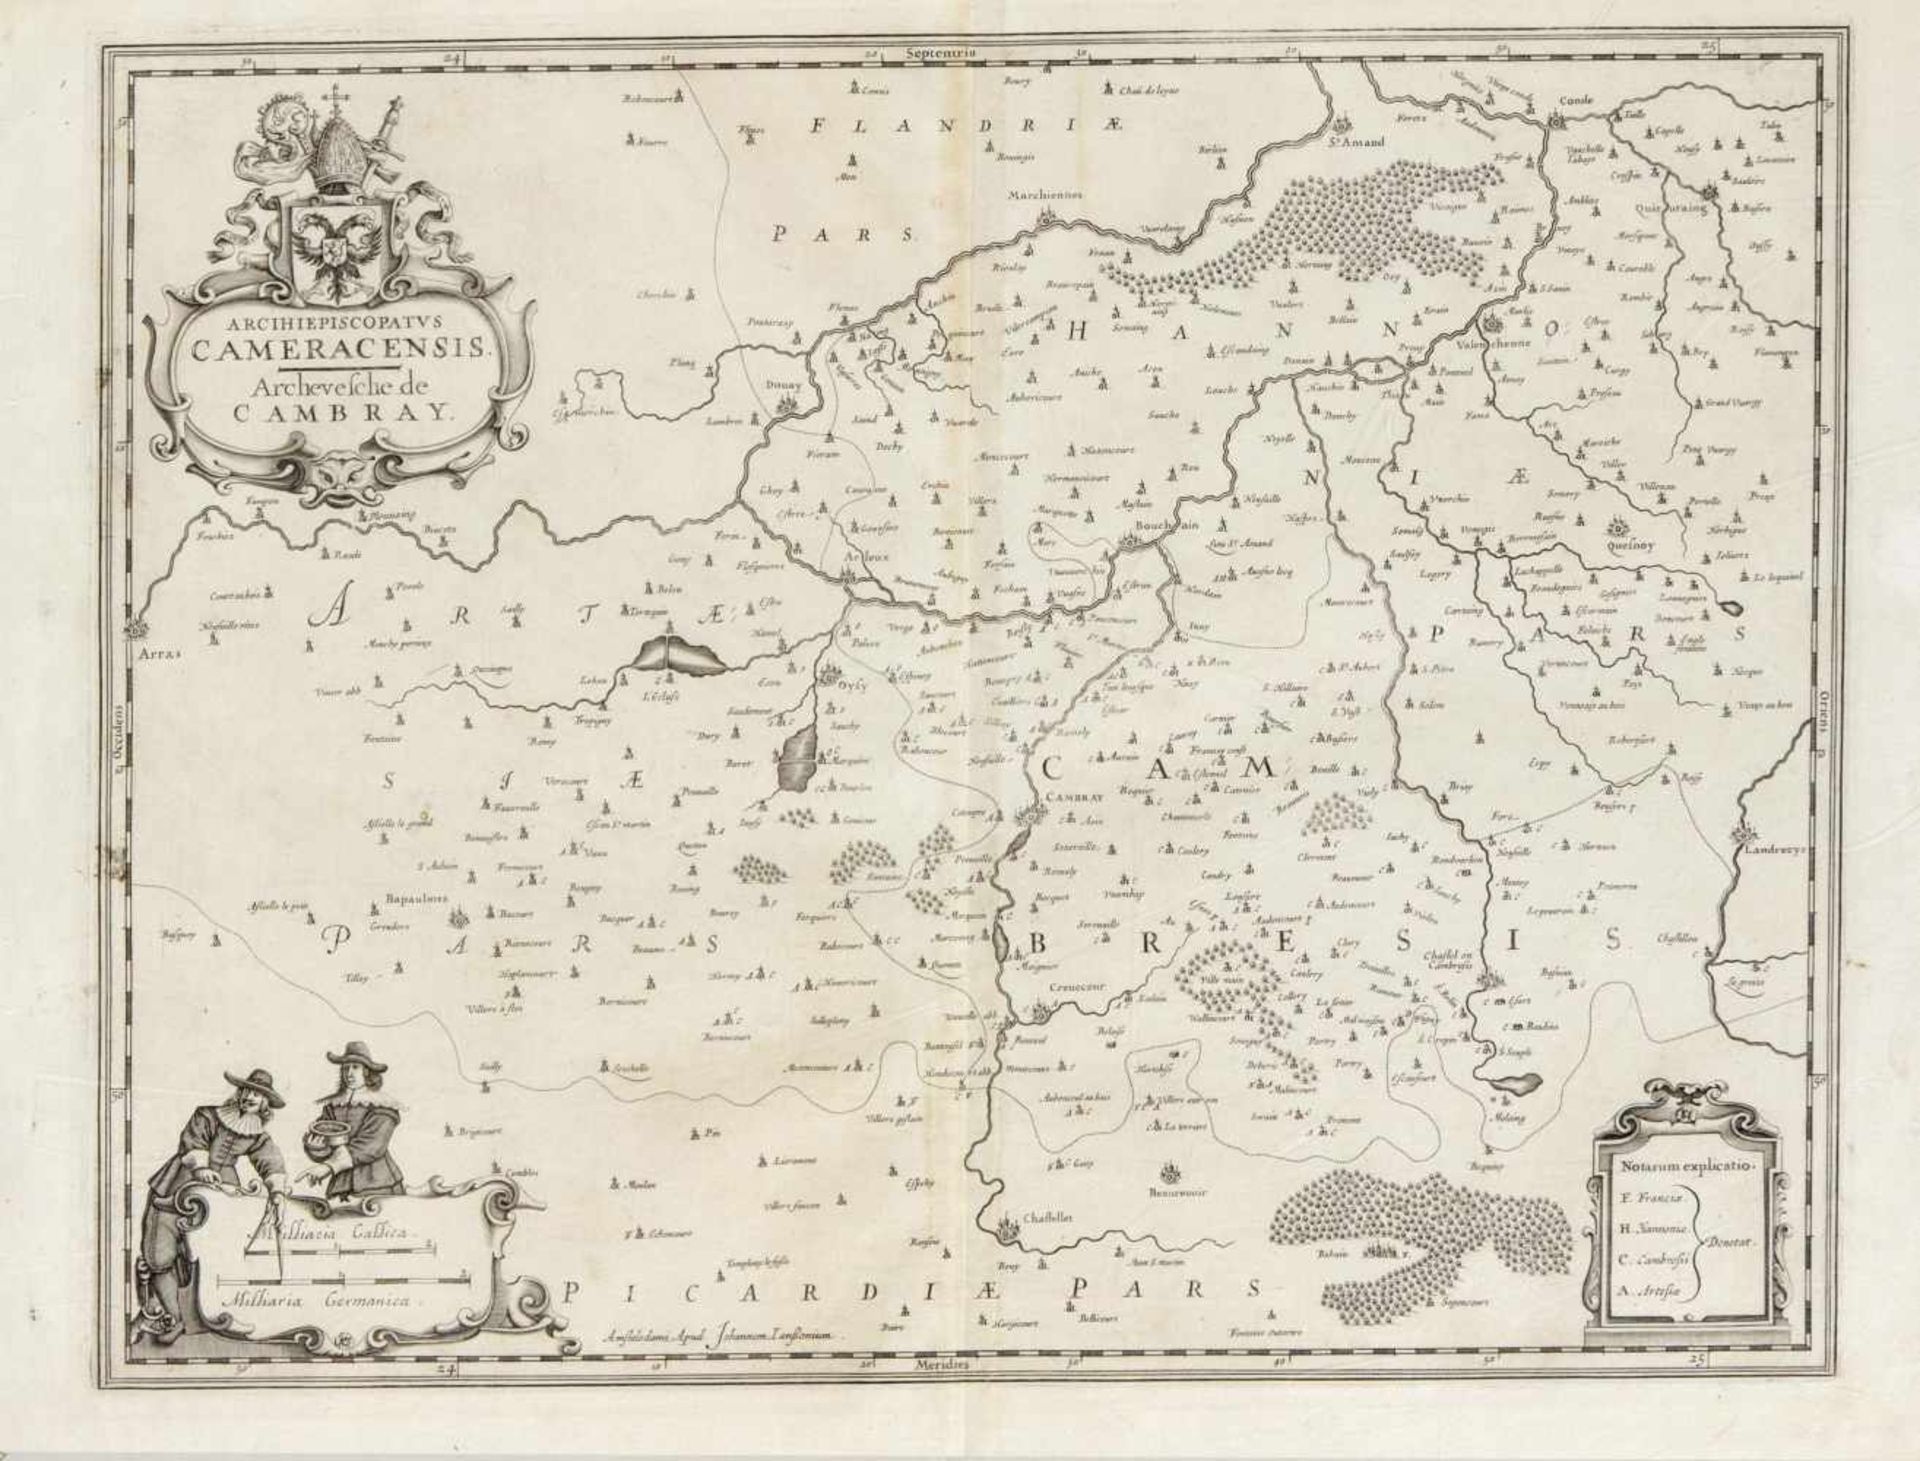 Konvolut von drei historischen Karten des 17.-18. Jh., "Arcihiepiscopatus Cameracensis,Archevesche